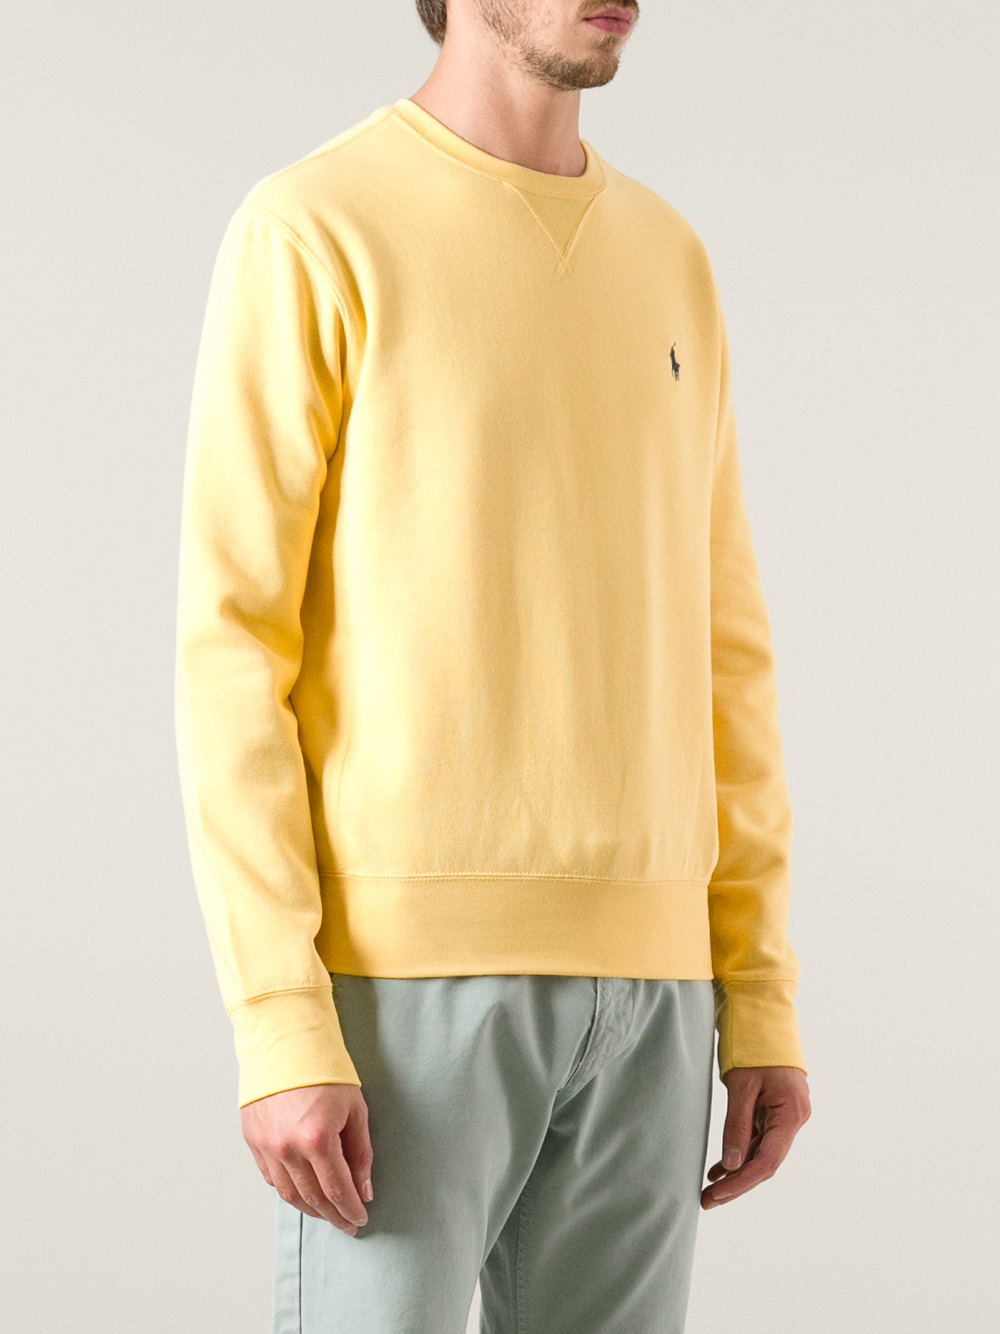 Lyst - Polo Ralph Lauren Crew Neck Sweatshirt in Yellow for Men